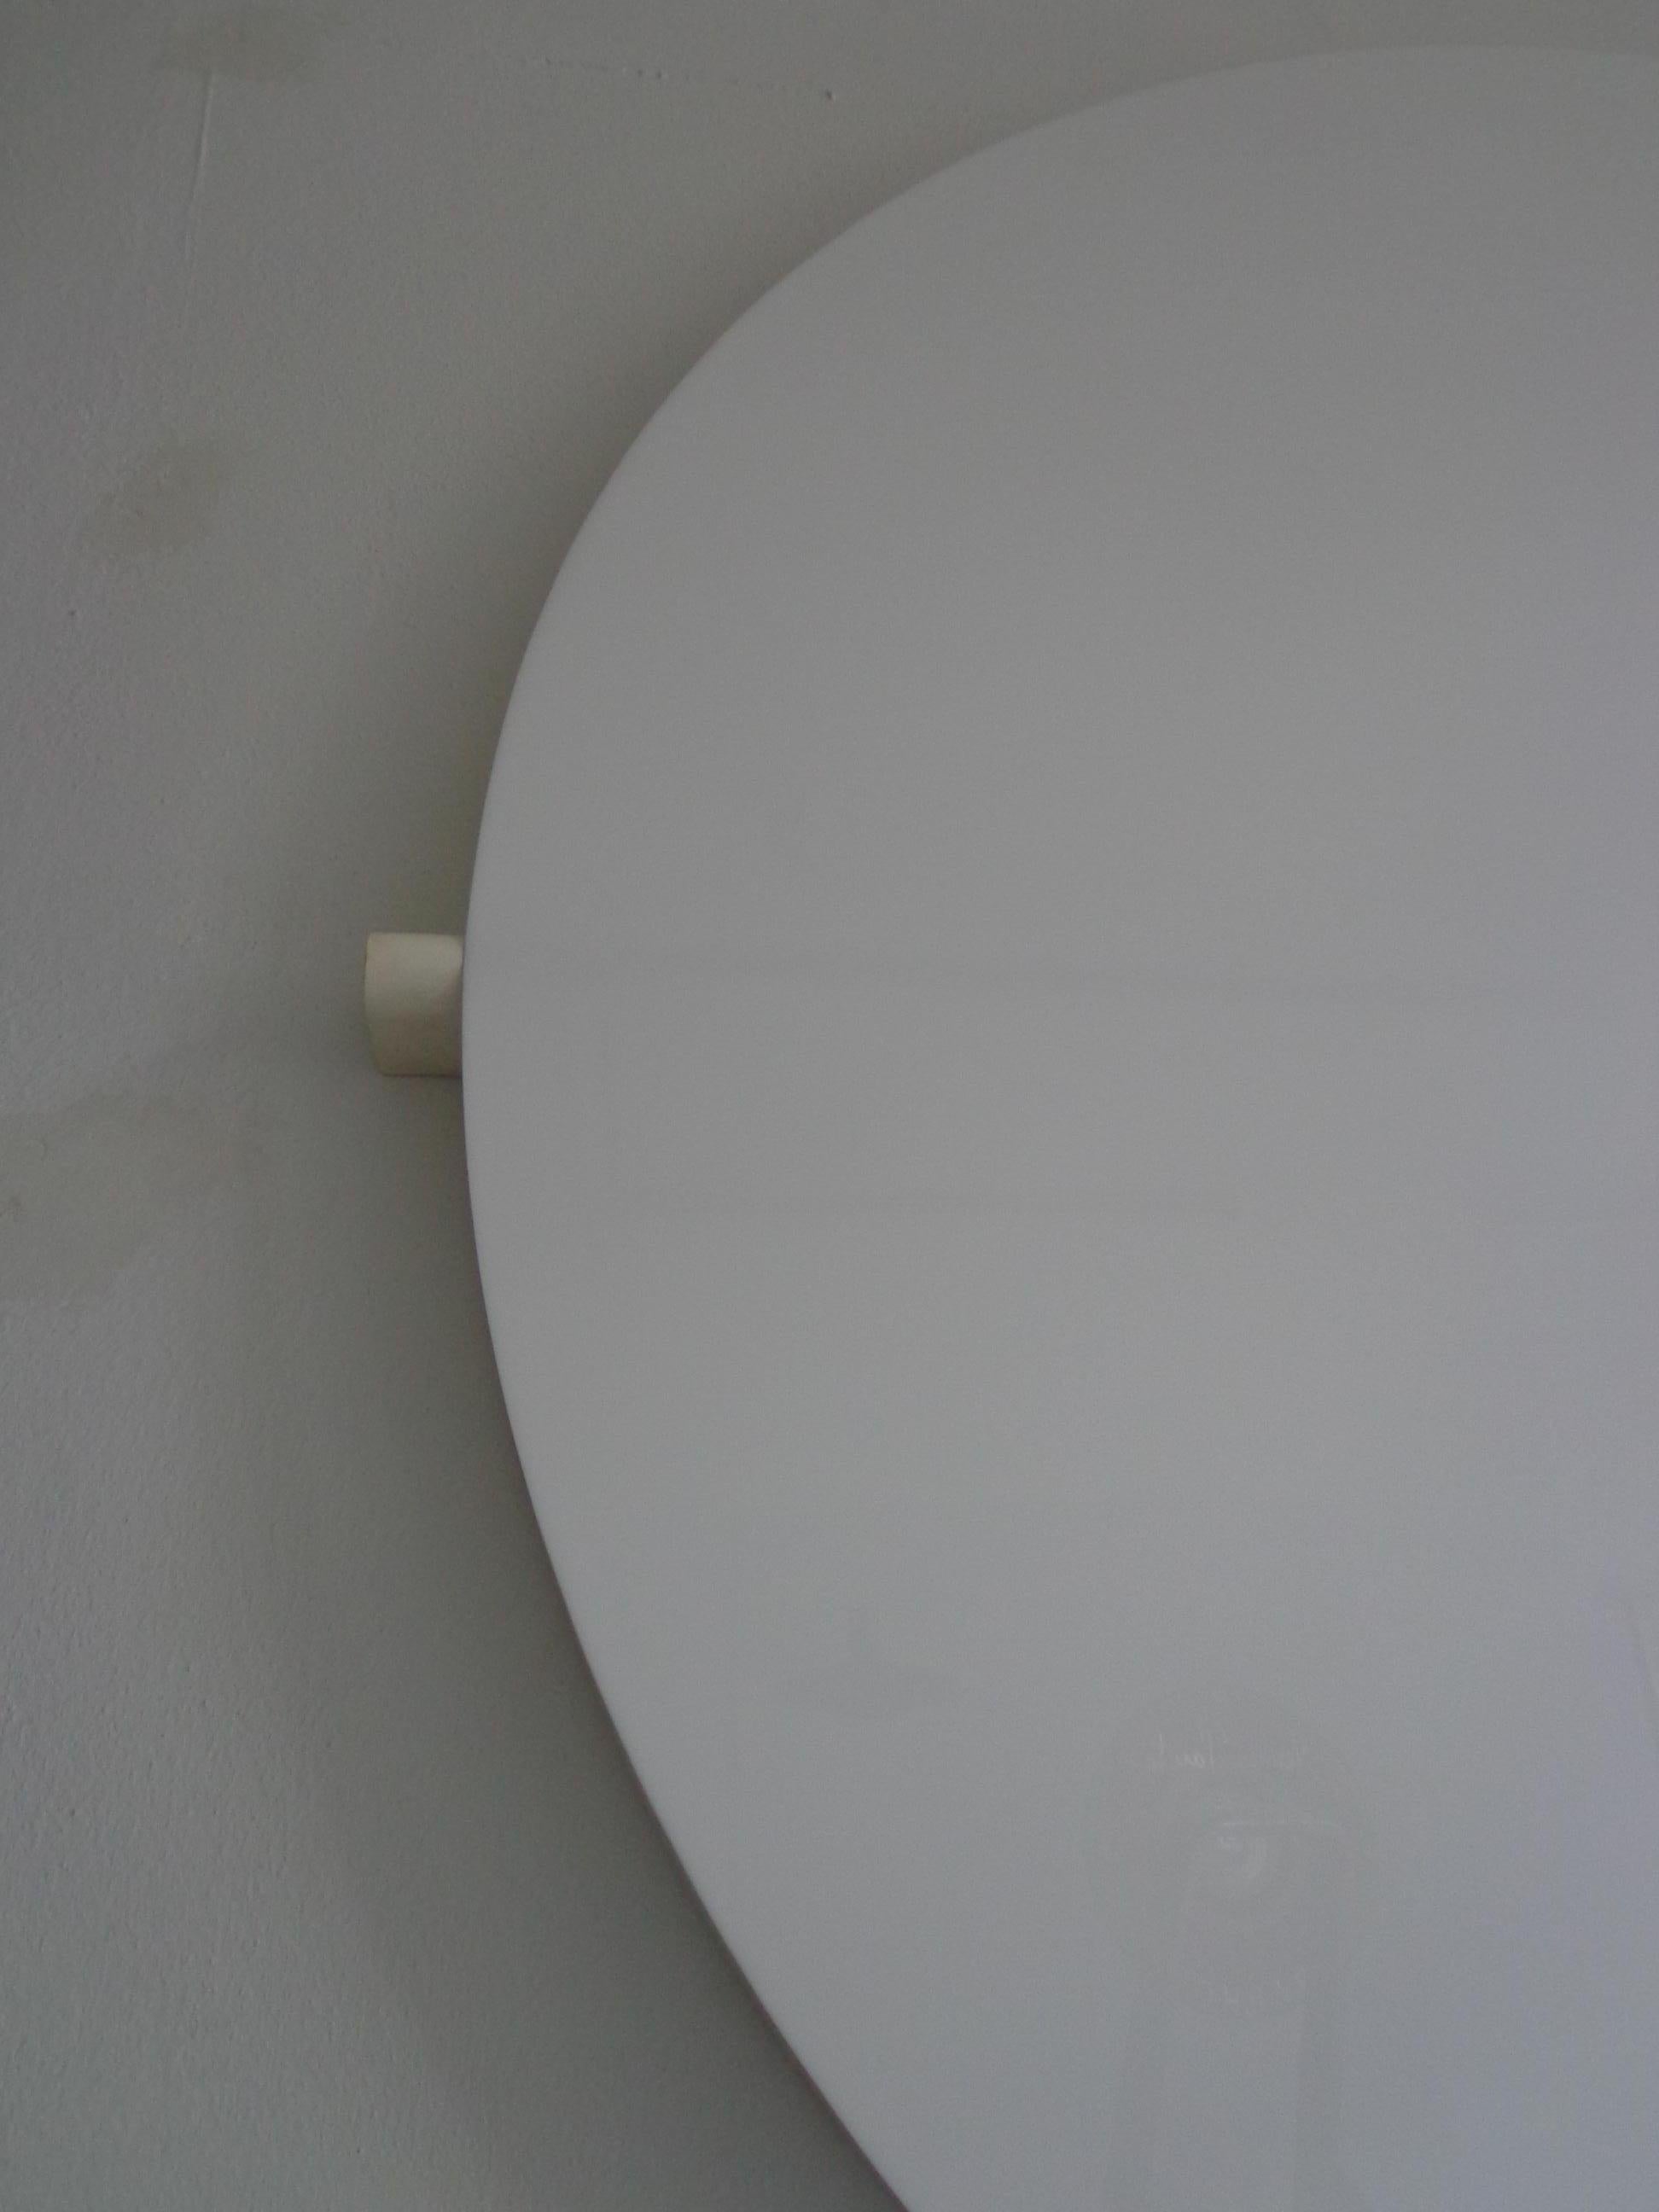 Acrylic Aldo van den Nieuwelaar ‘Circle’ Wall Light Dutch Design, 1984 For Sale